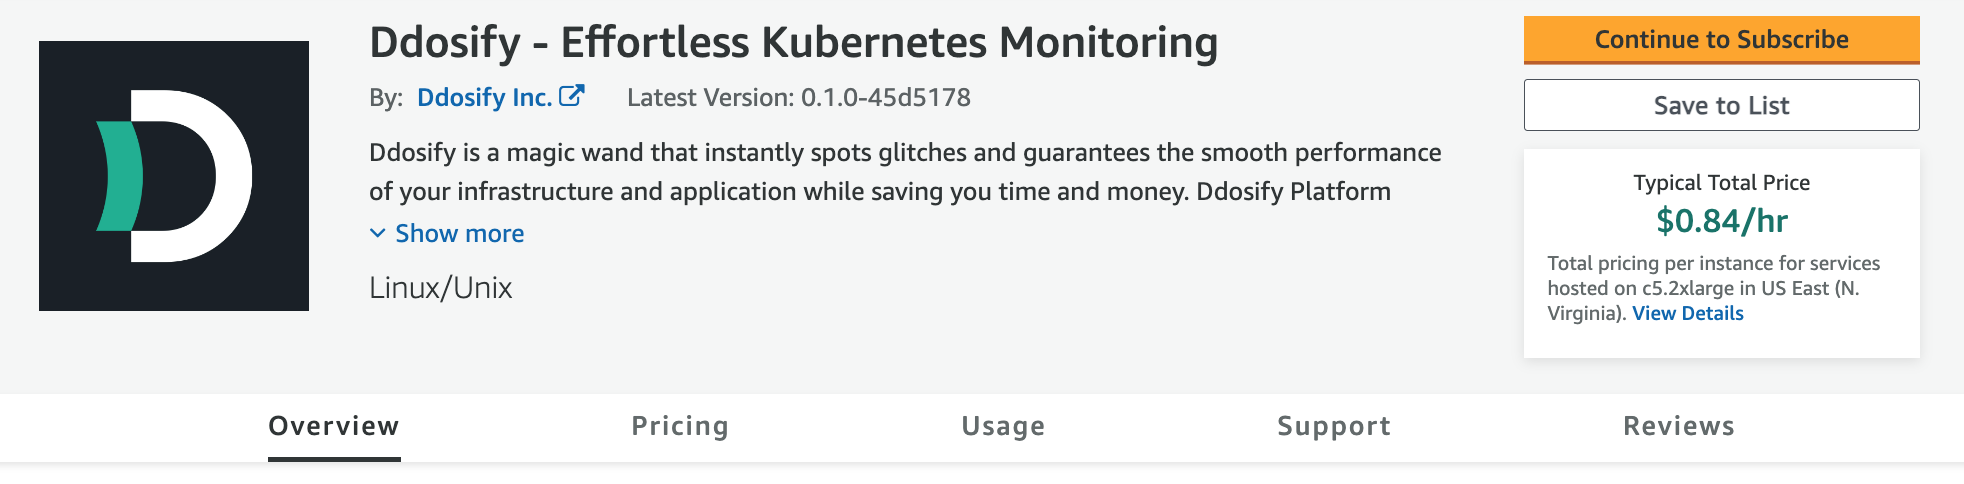 Ddosify - Effortless Kubernetes Monitoring AWS Marketplace